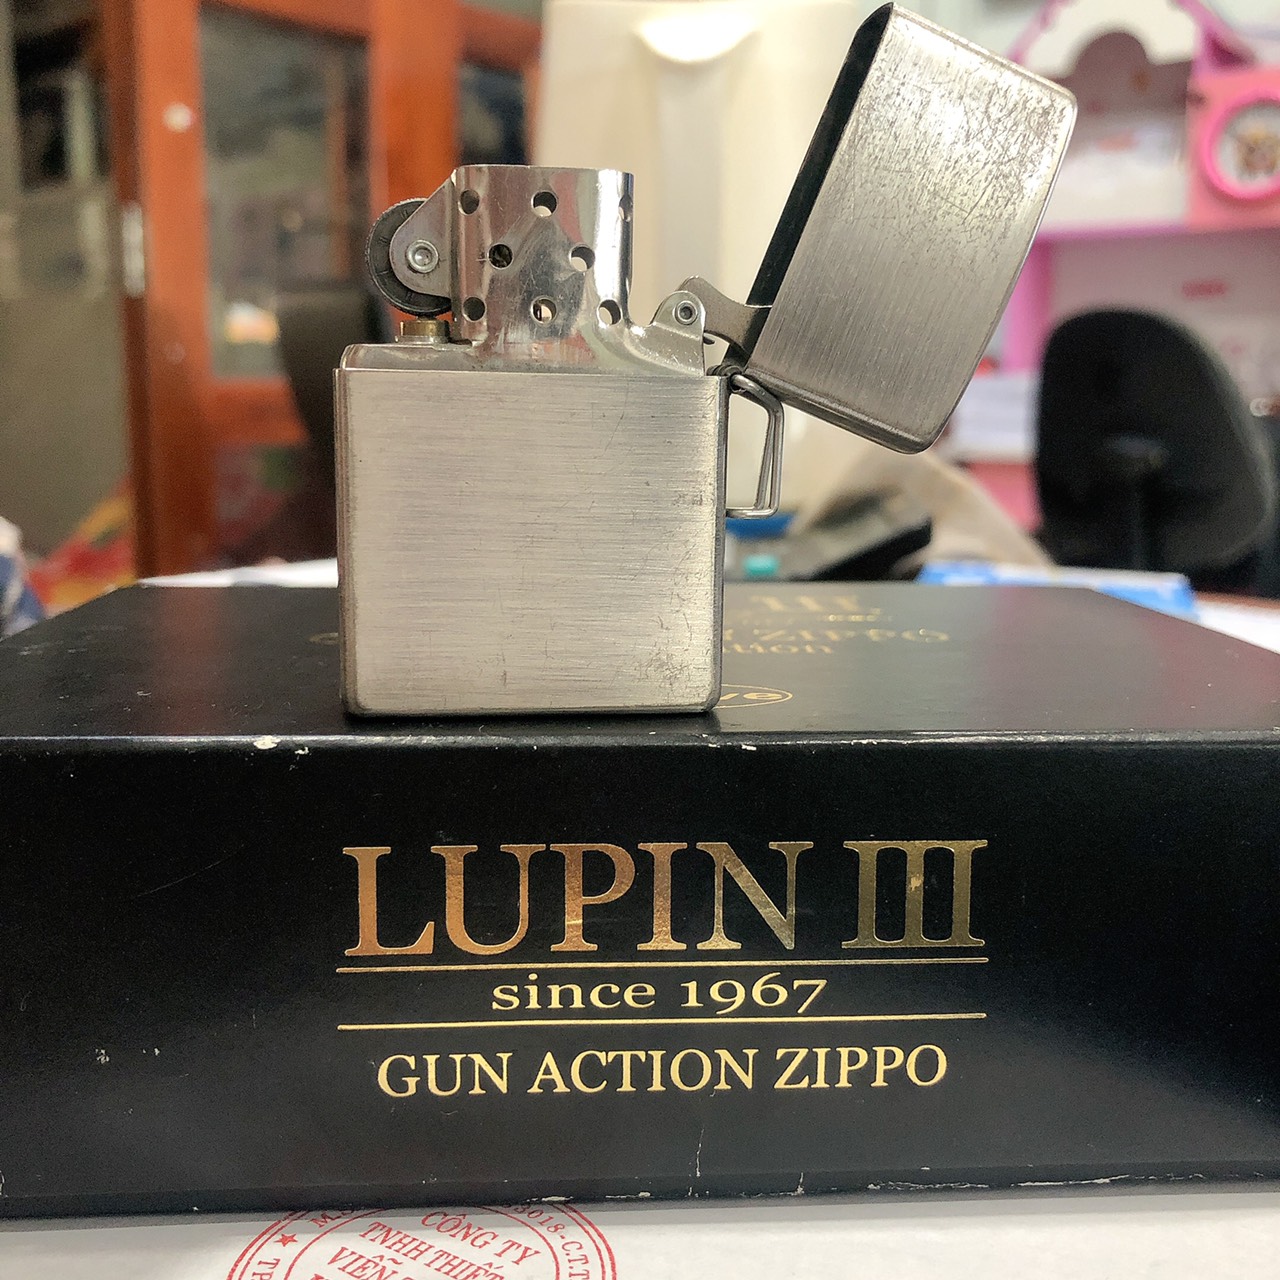 Bật lửa Ziippo Mỹ Lunpin III, lacke bạc, khắc ăn mòn full nắp Mercedes Benz bản giới hạn, kèm phụ kiện